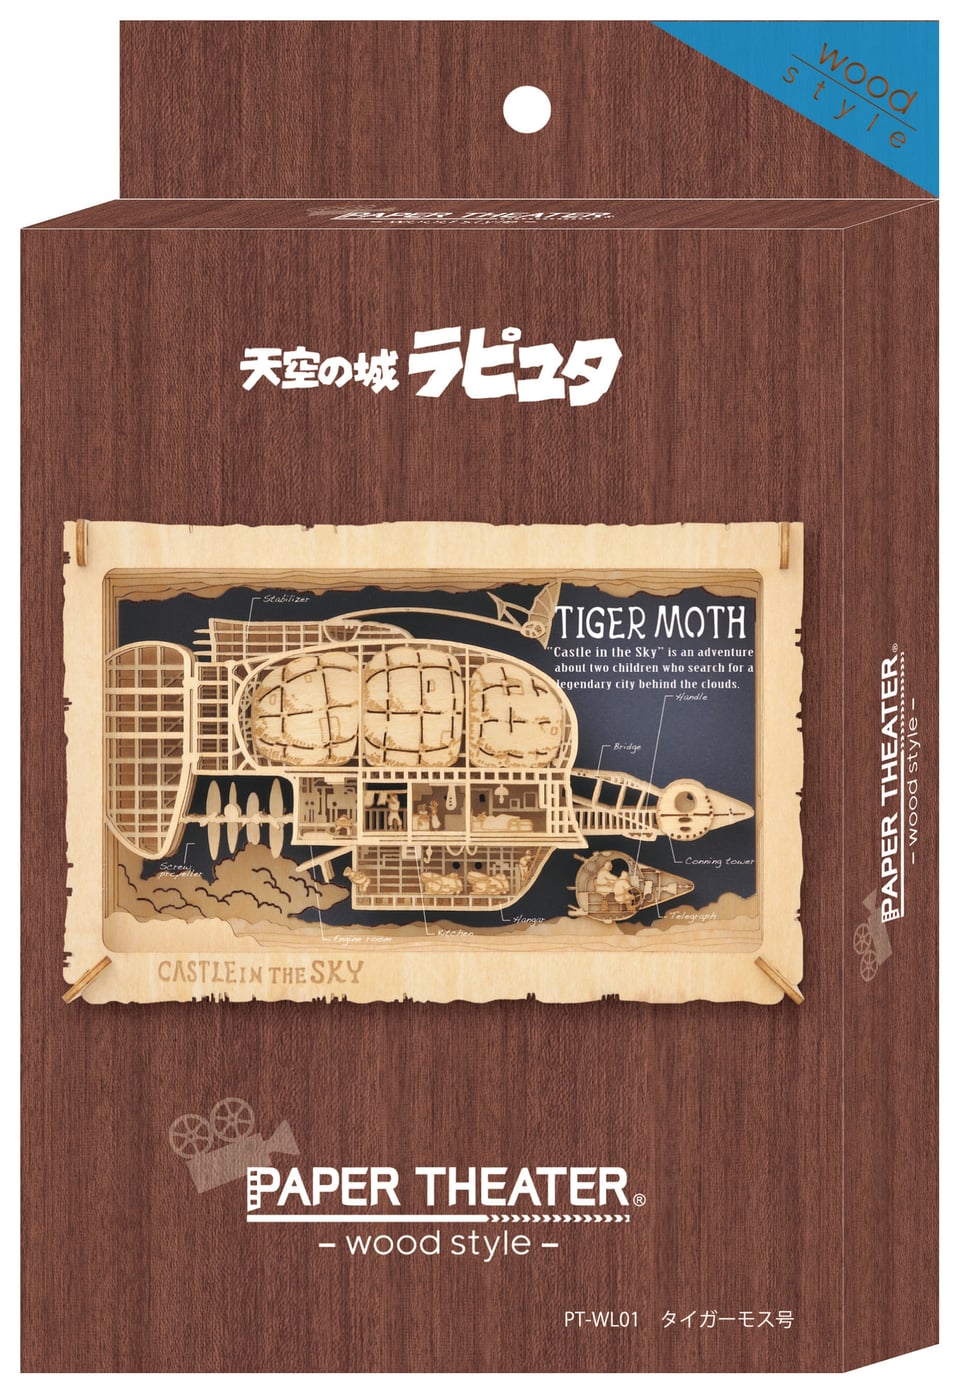 天空の城ラピュタ PAPER THEATER -wood style- / タイガーモス号 PT 